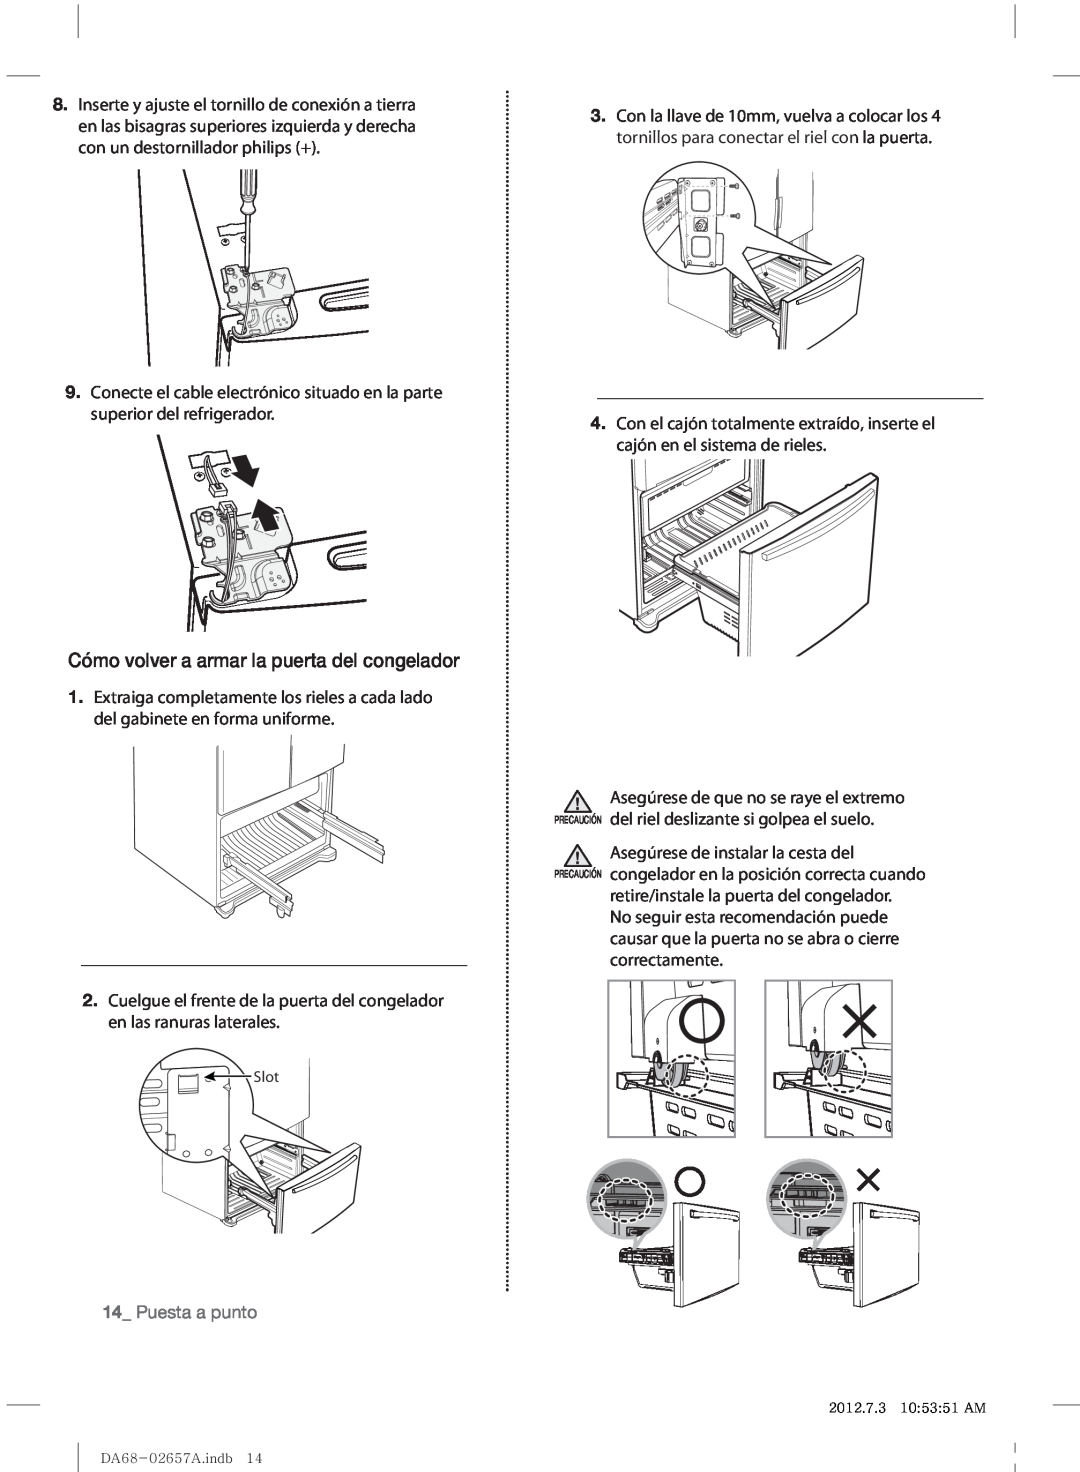 Samsung RF221NCTABC user manual Cómo volver a armar la puerta del congelador, Puesta a punto 